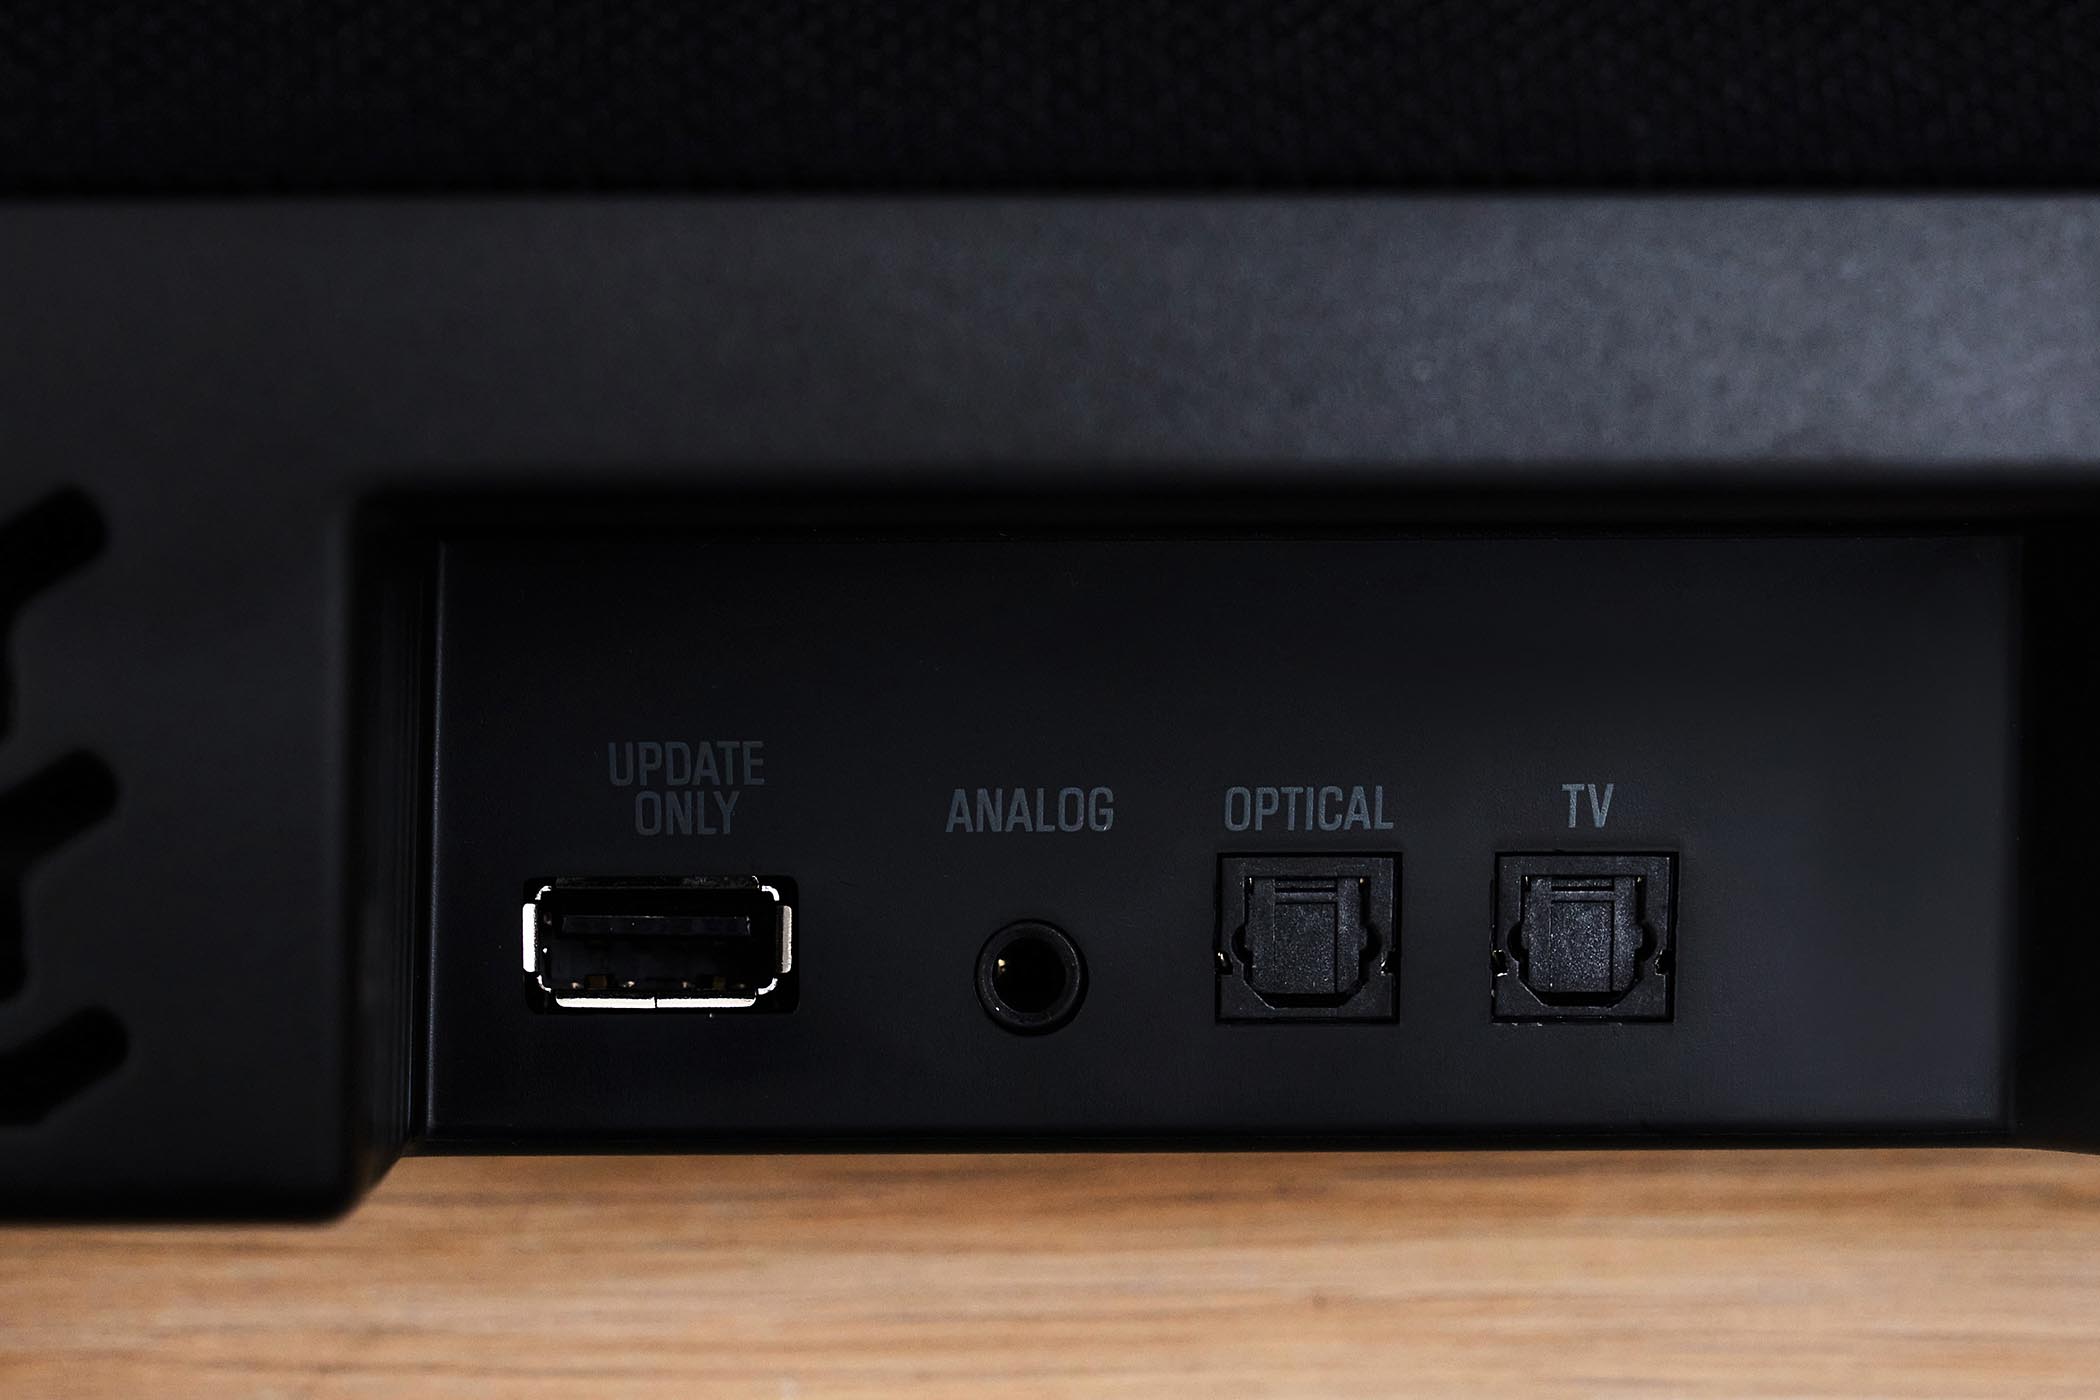 主機背面較深的凹陷區域所配置的傳輸介面群包含用於更新 Soundbar 韌體的 USB 插、一組 3.5mm 立體聲輸入、TV IN 光纖數位音訊輸入和 OPTICAL 光纖輸入各一組。